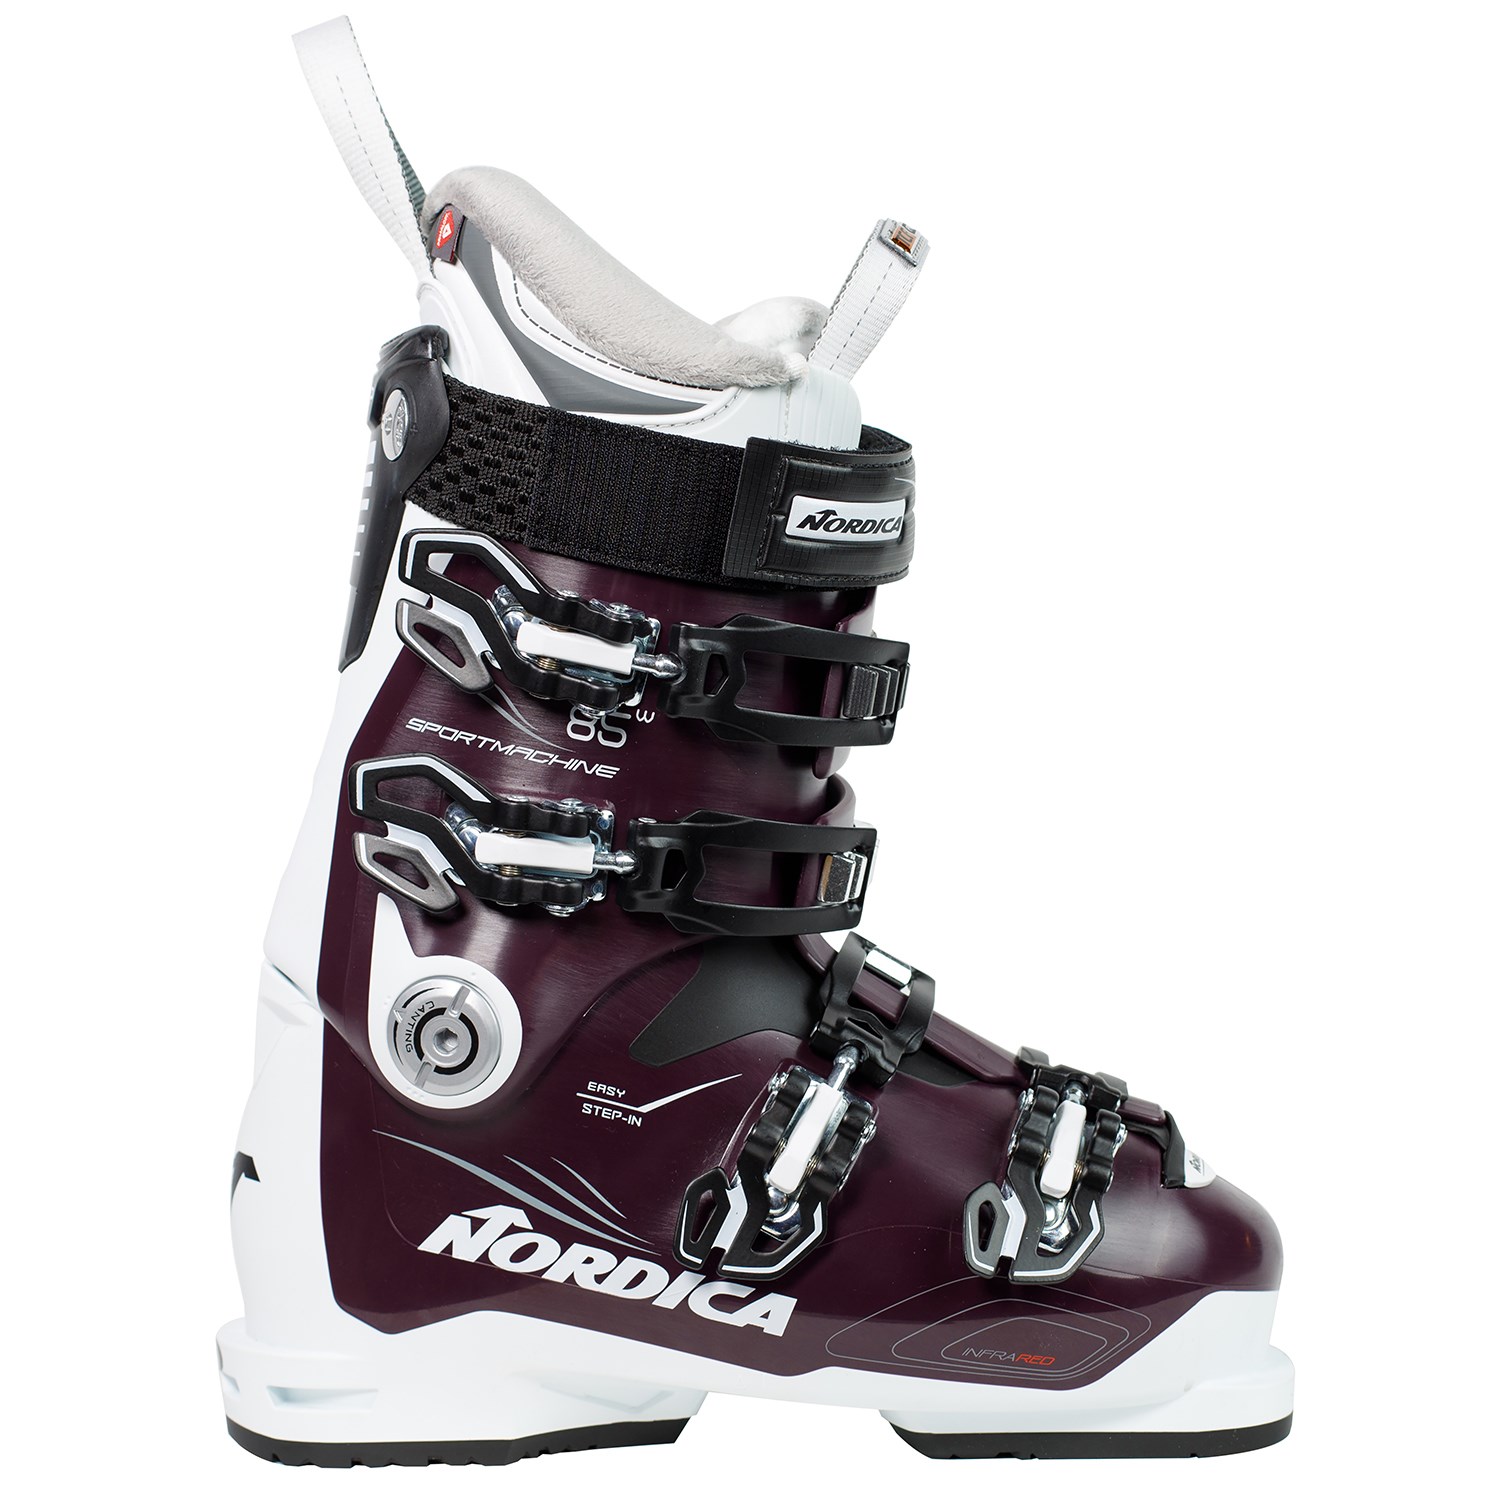 Nordica Sportmachine 85 W Ski Boots - Women's 2019 | evo